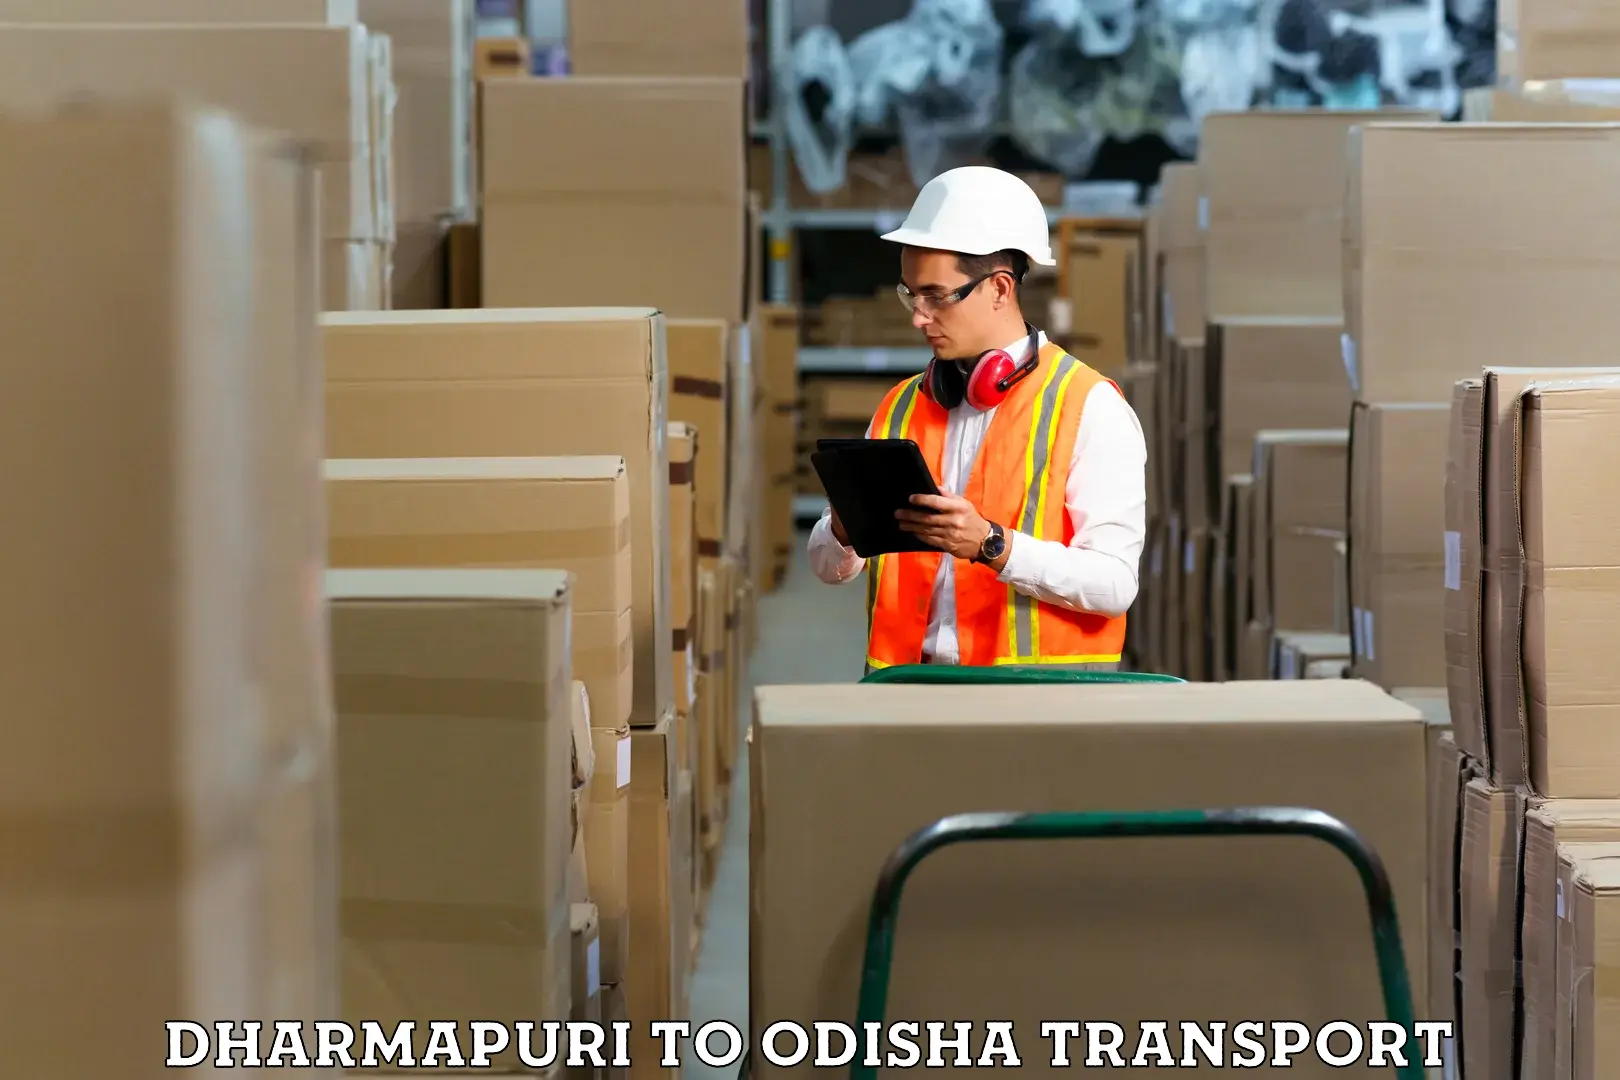 Delivery service Dharmapuri to Puranakatak